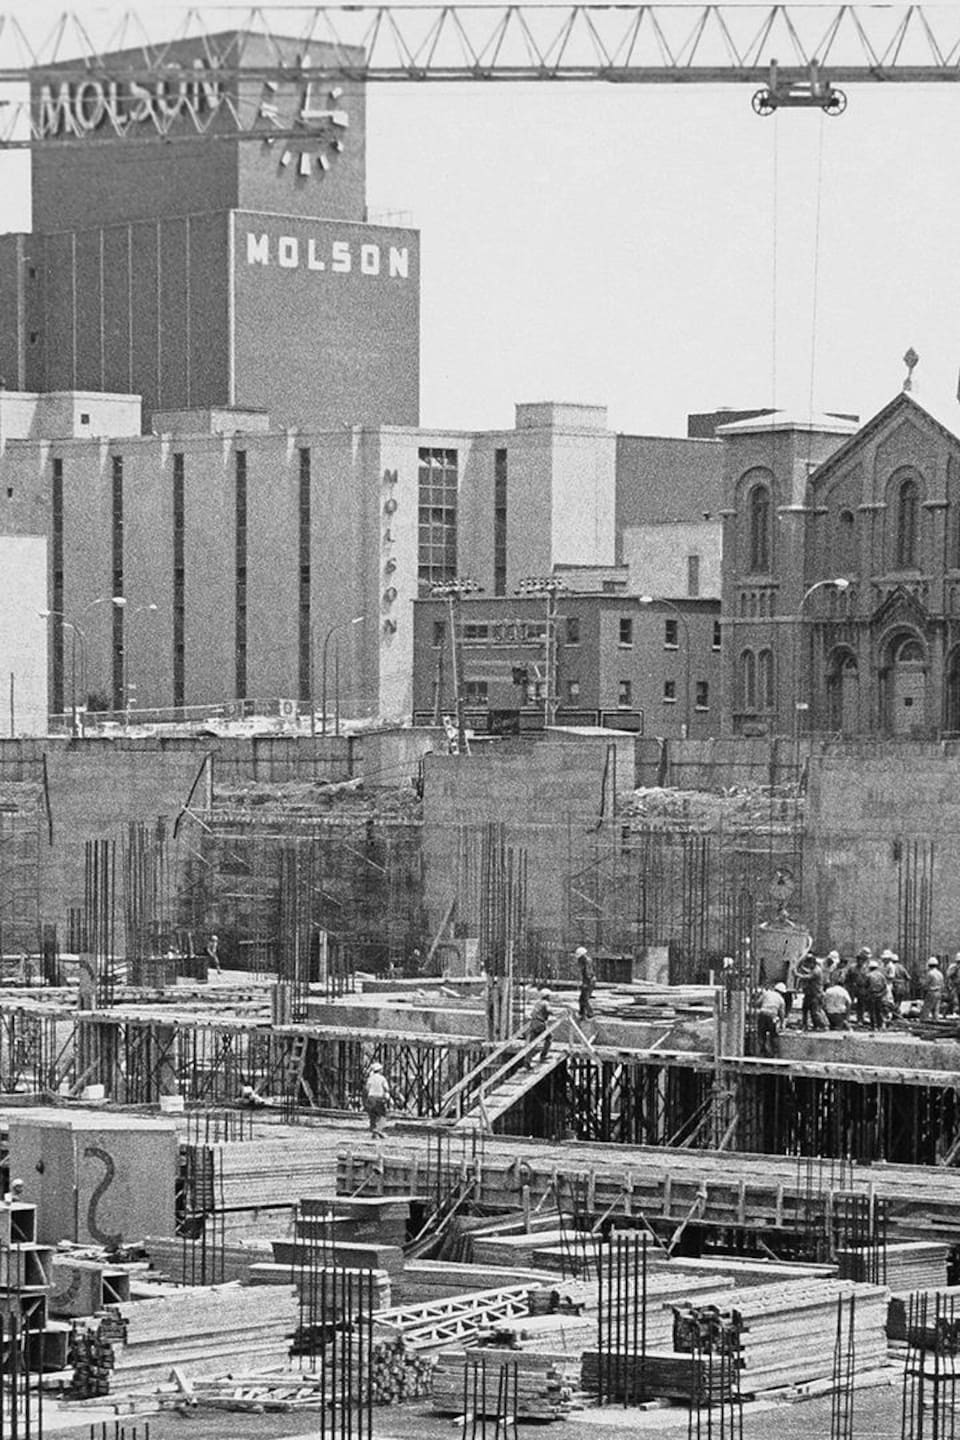 Chantier de construction avec église et usine Molson en arrière plan. 